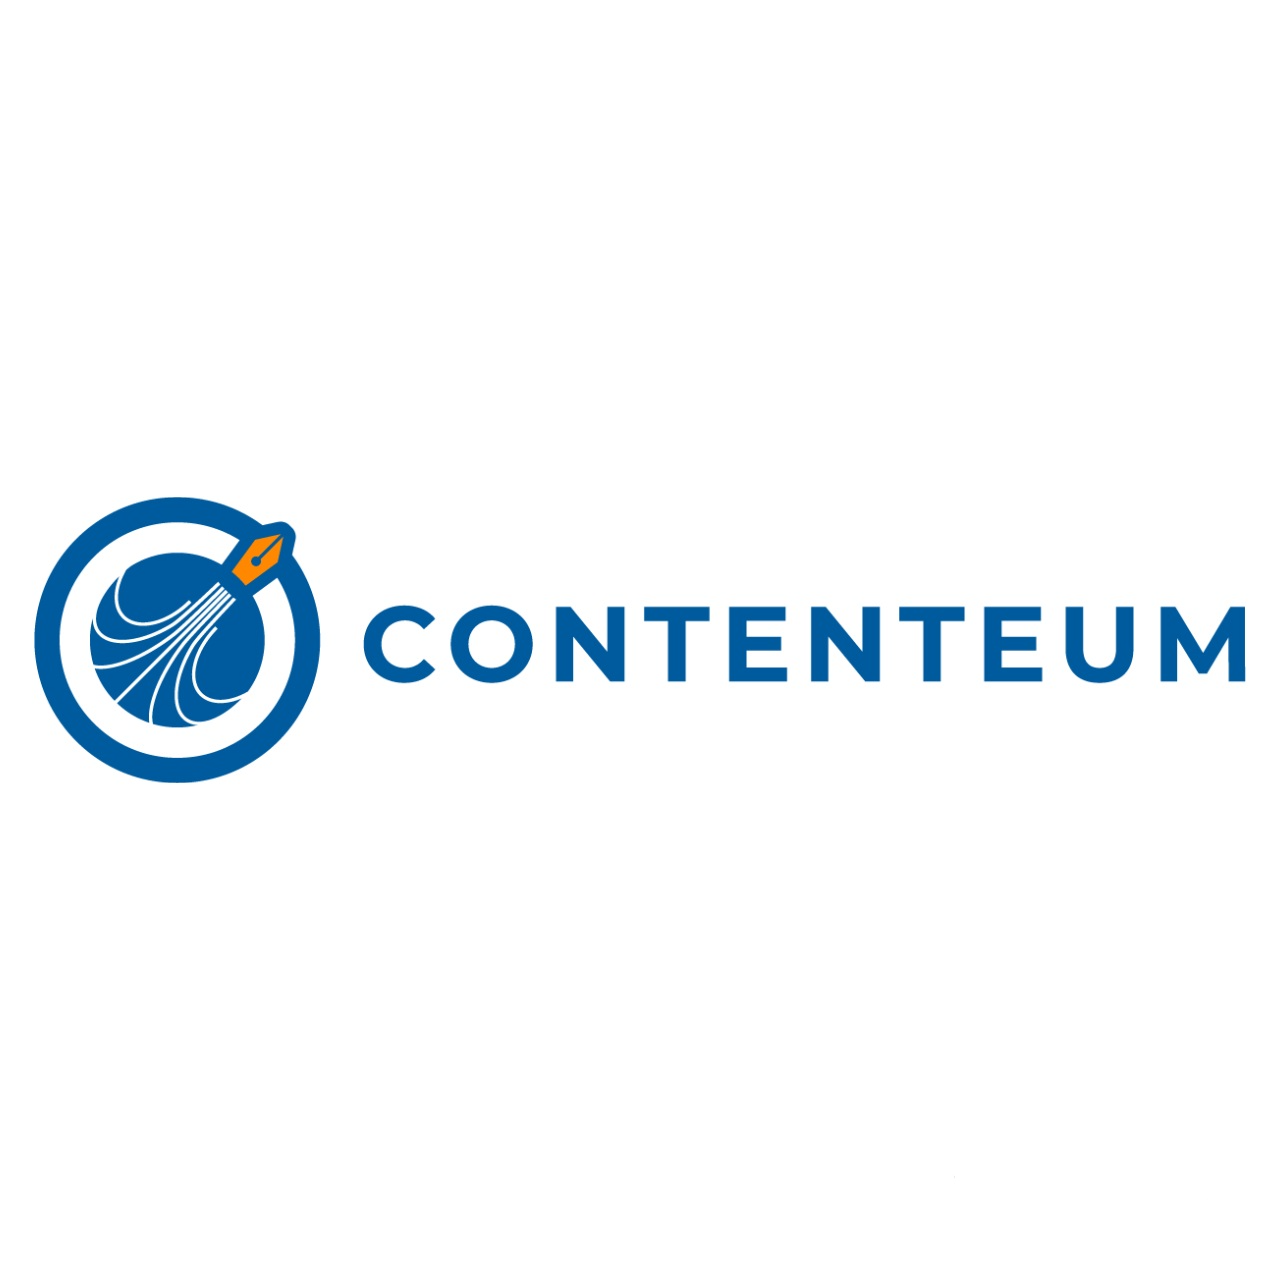 Contenteum